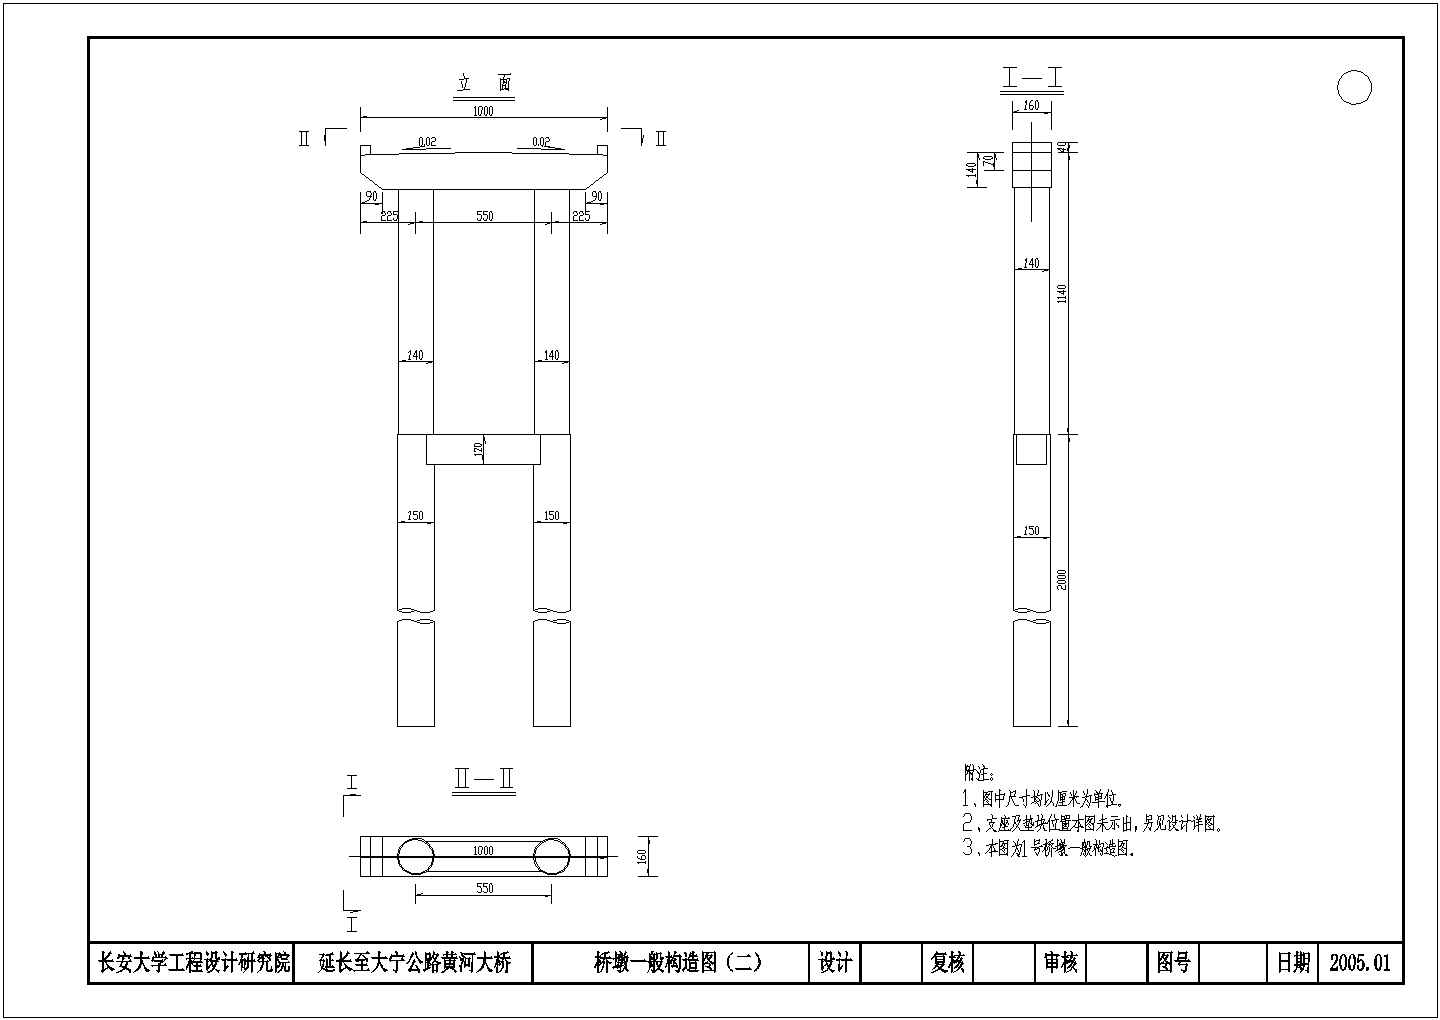 多跨高墩连续钢构桥CAD平面布置参考图